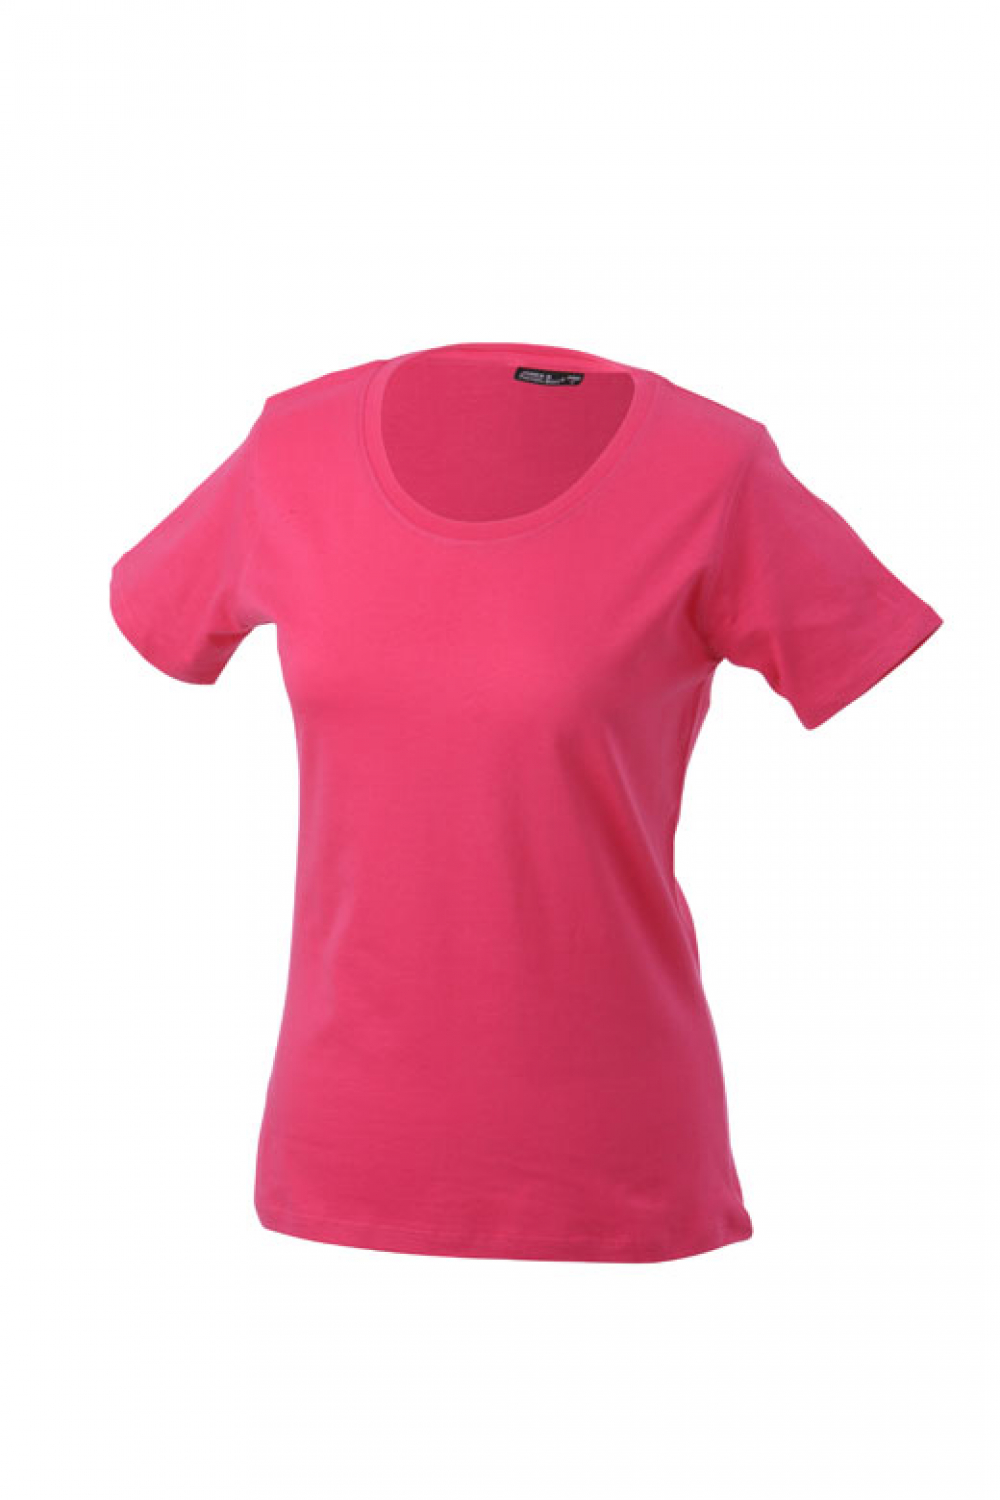 Lady Shirt pink